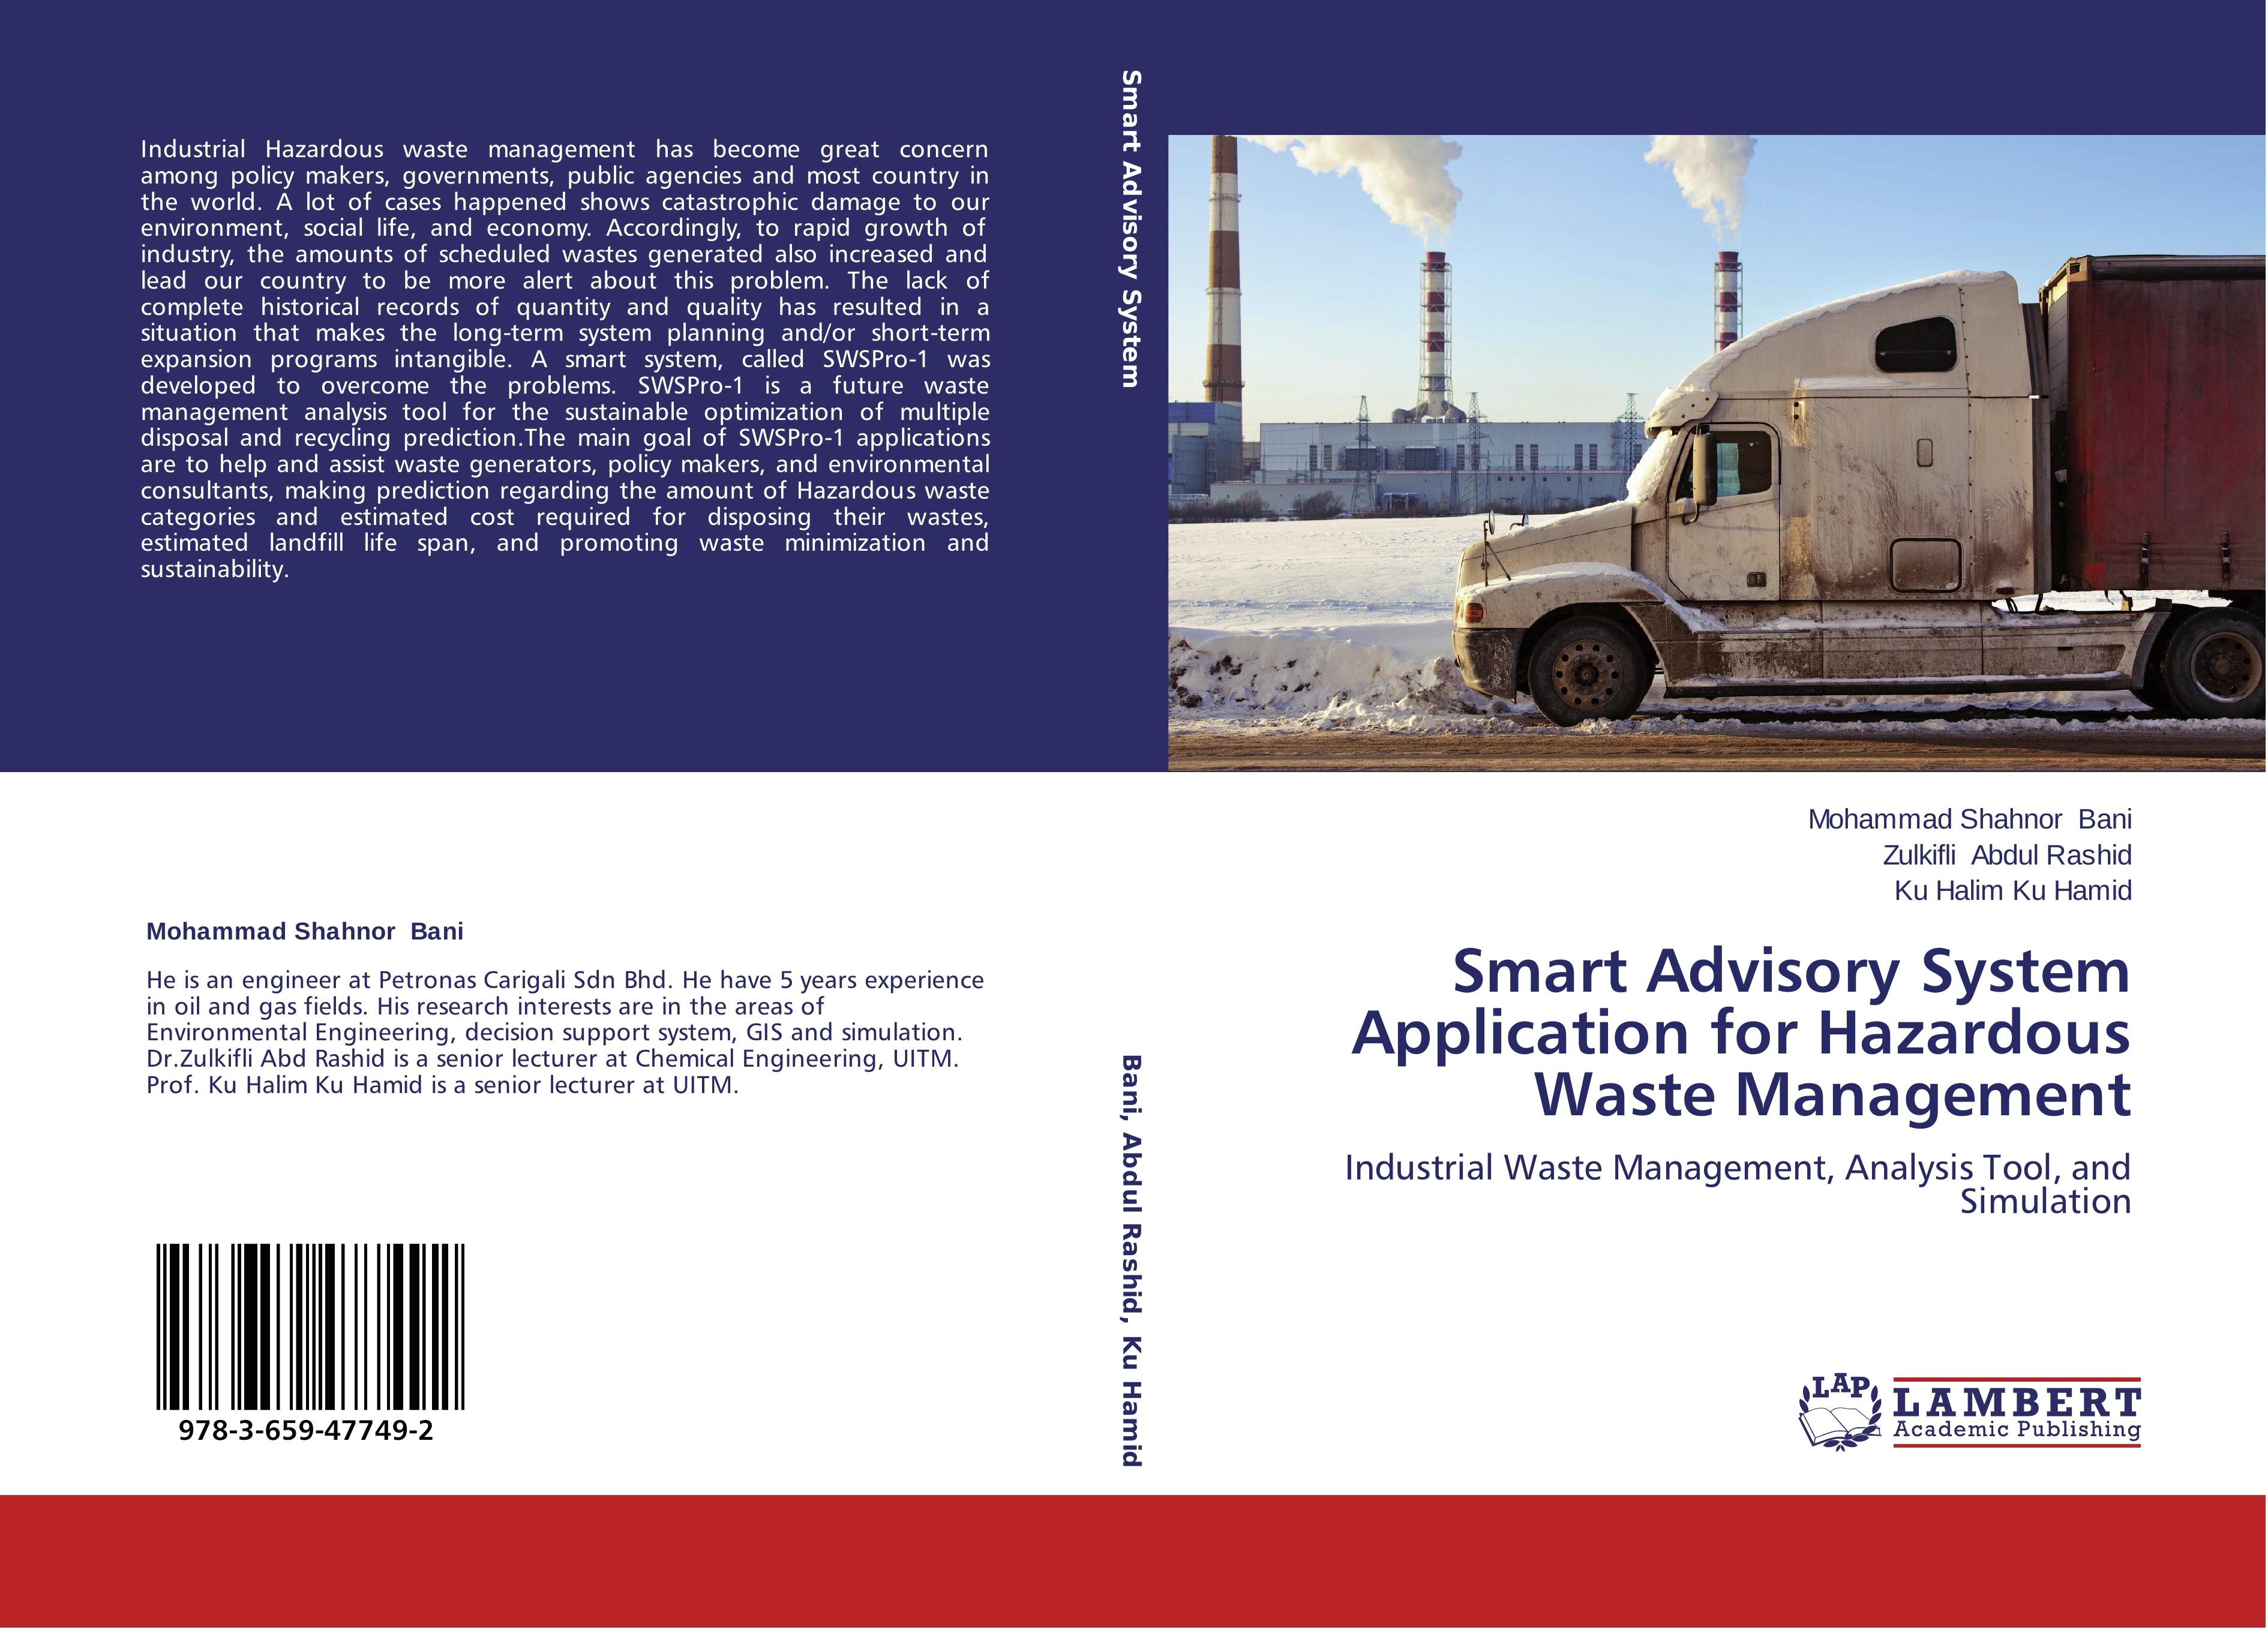 Smart Advisory System Application for Hazardous Waste Management - Mohammad Shahnor Bani Zulkifli Abdul Rashid Ku Halim Ku Hamid